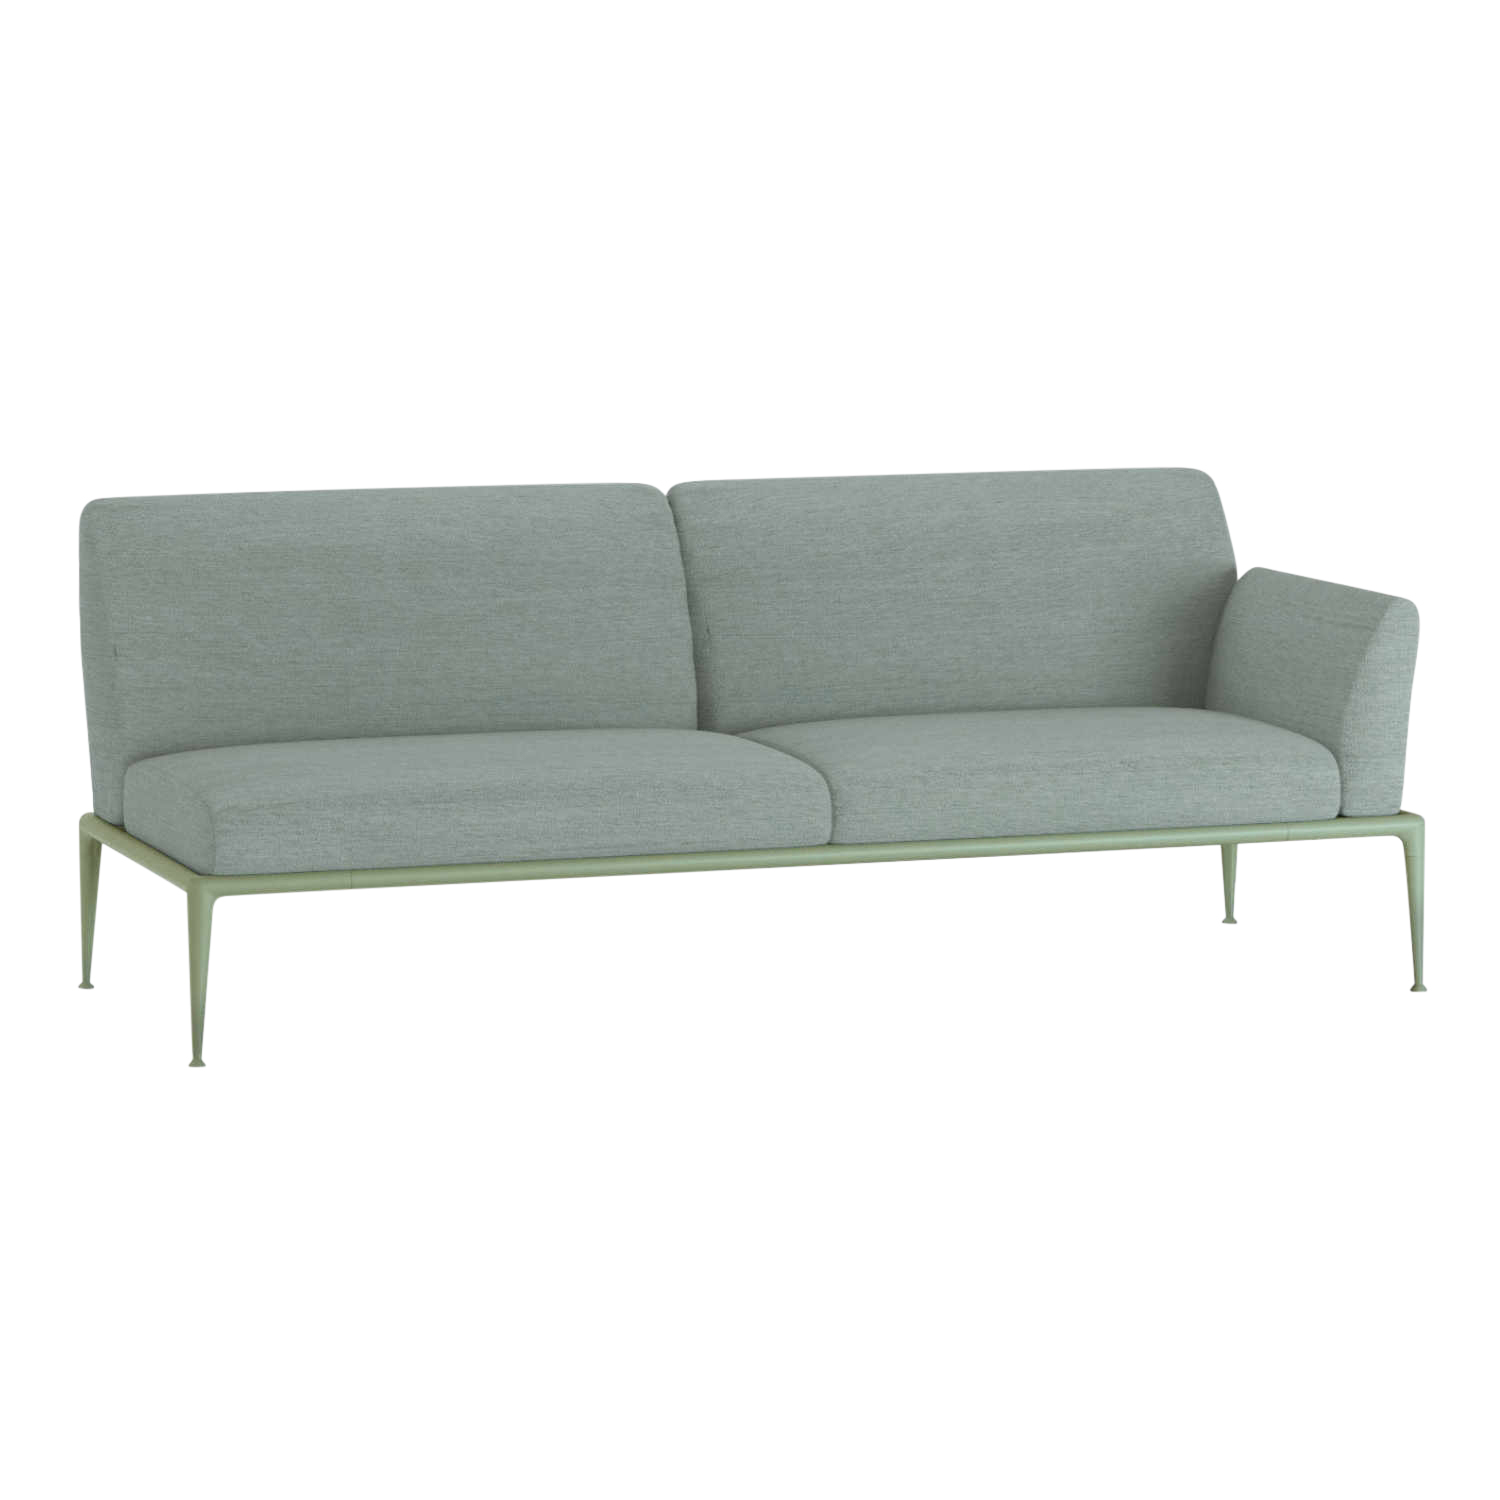 New Joint 3er Sofa, Ausführung armlehne links/sitzend rechts, Stoff range 1 solids, linen (hellbraun), Gestell aluminium lackiert, terracotta (terr... von FAST